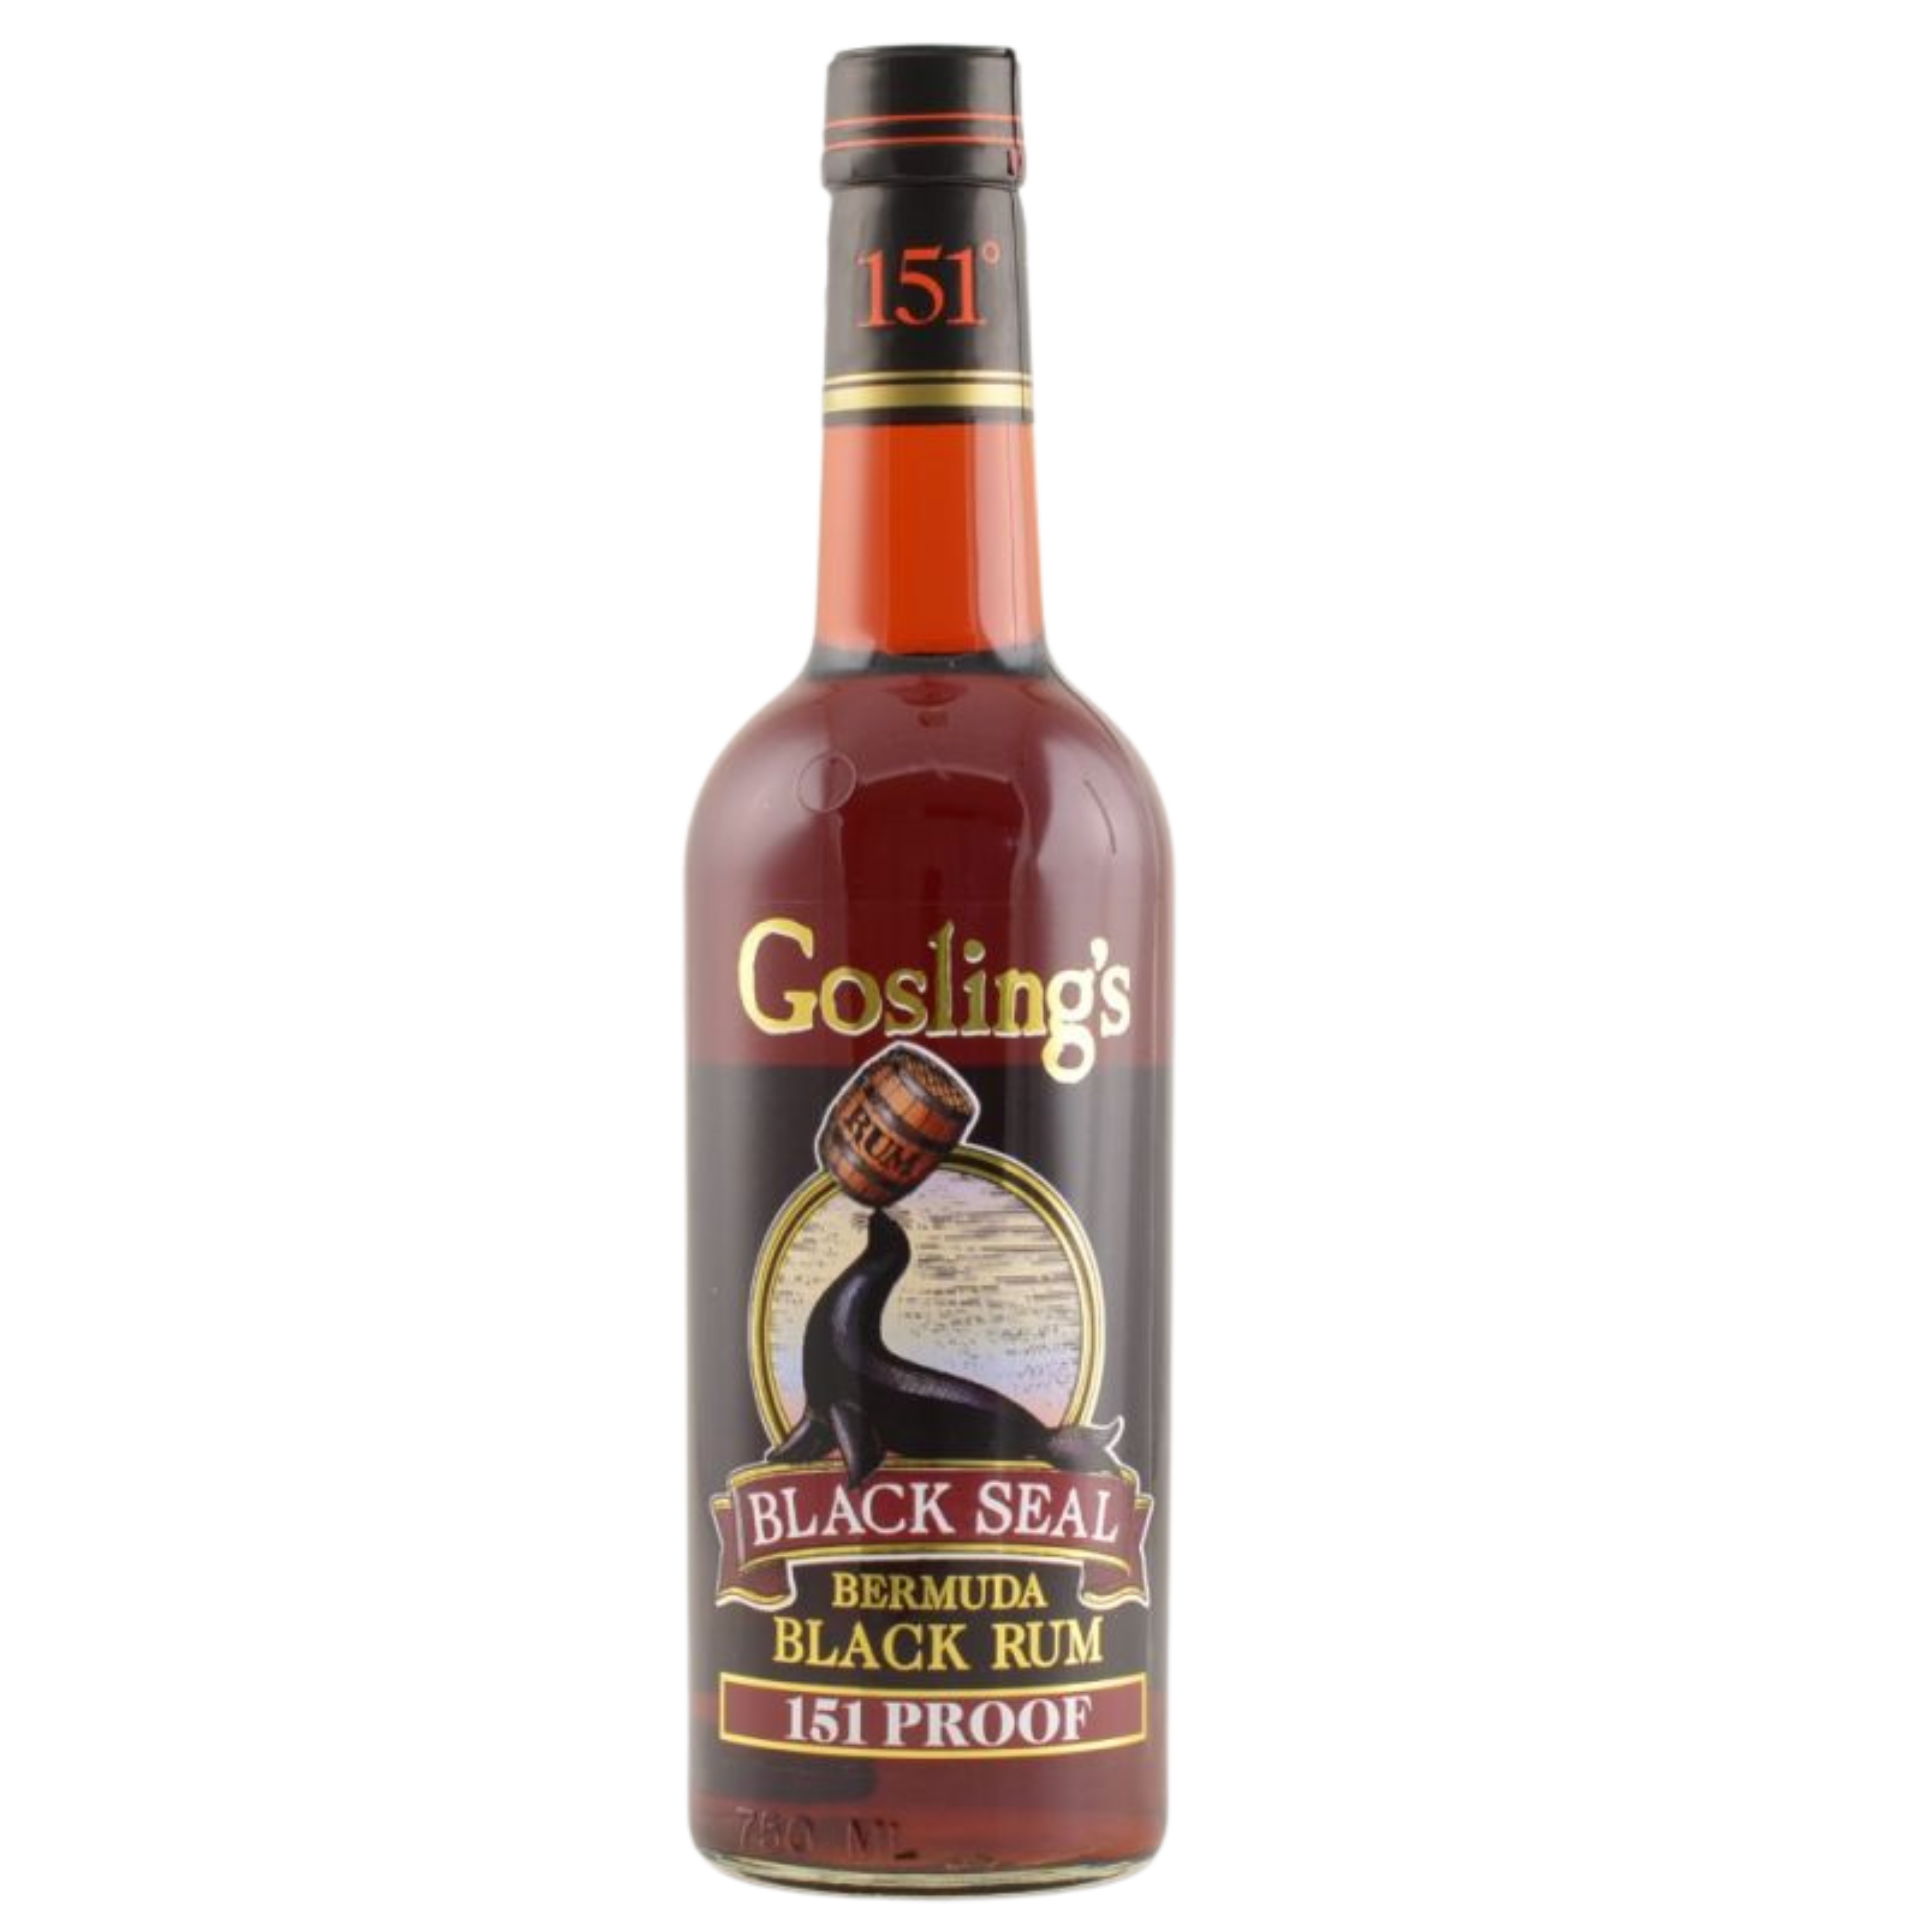 Goslings Black Seal 151 Proof Rum 75,5% 0,7l